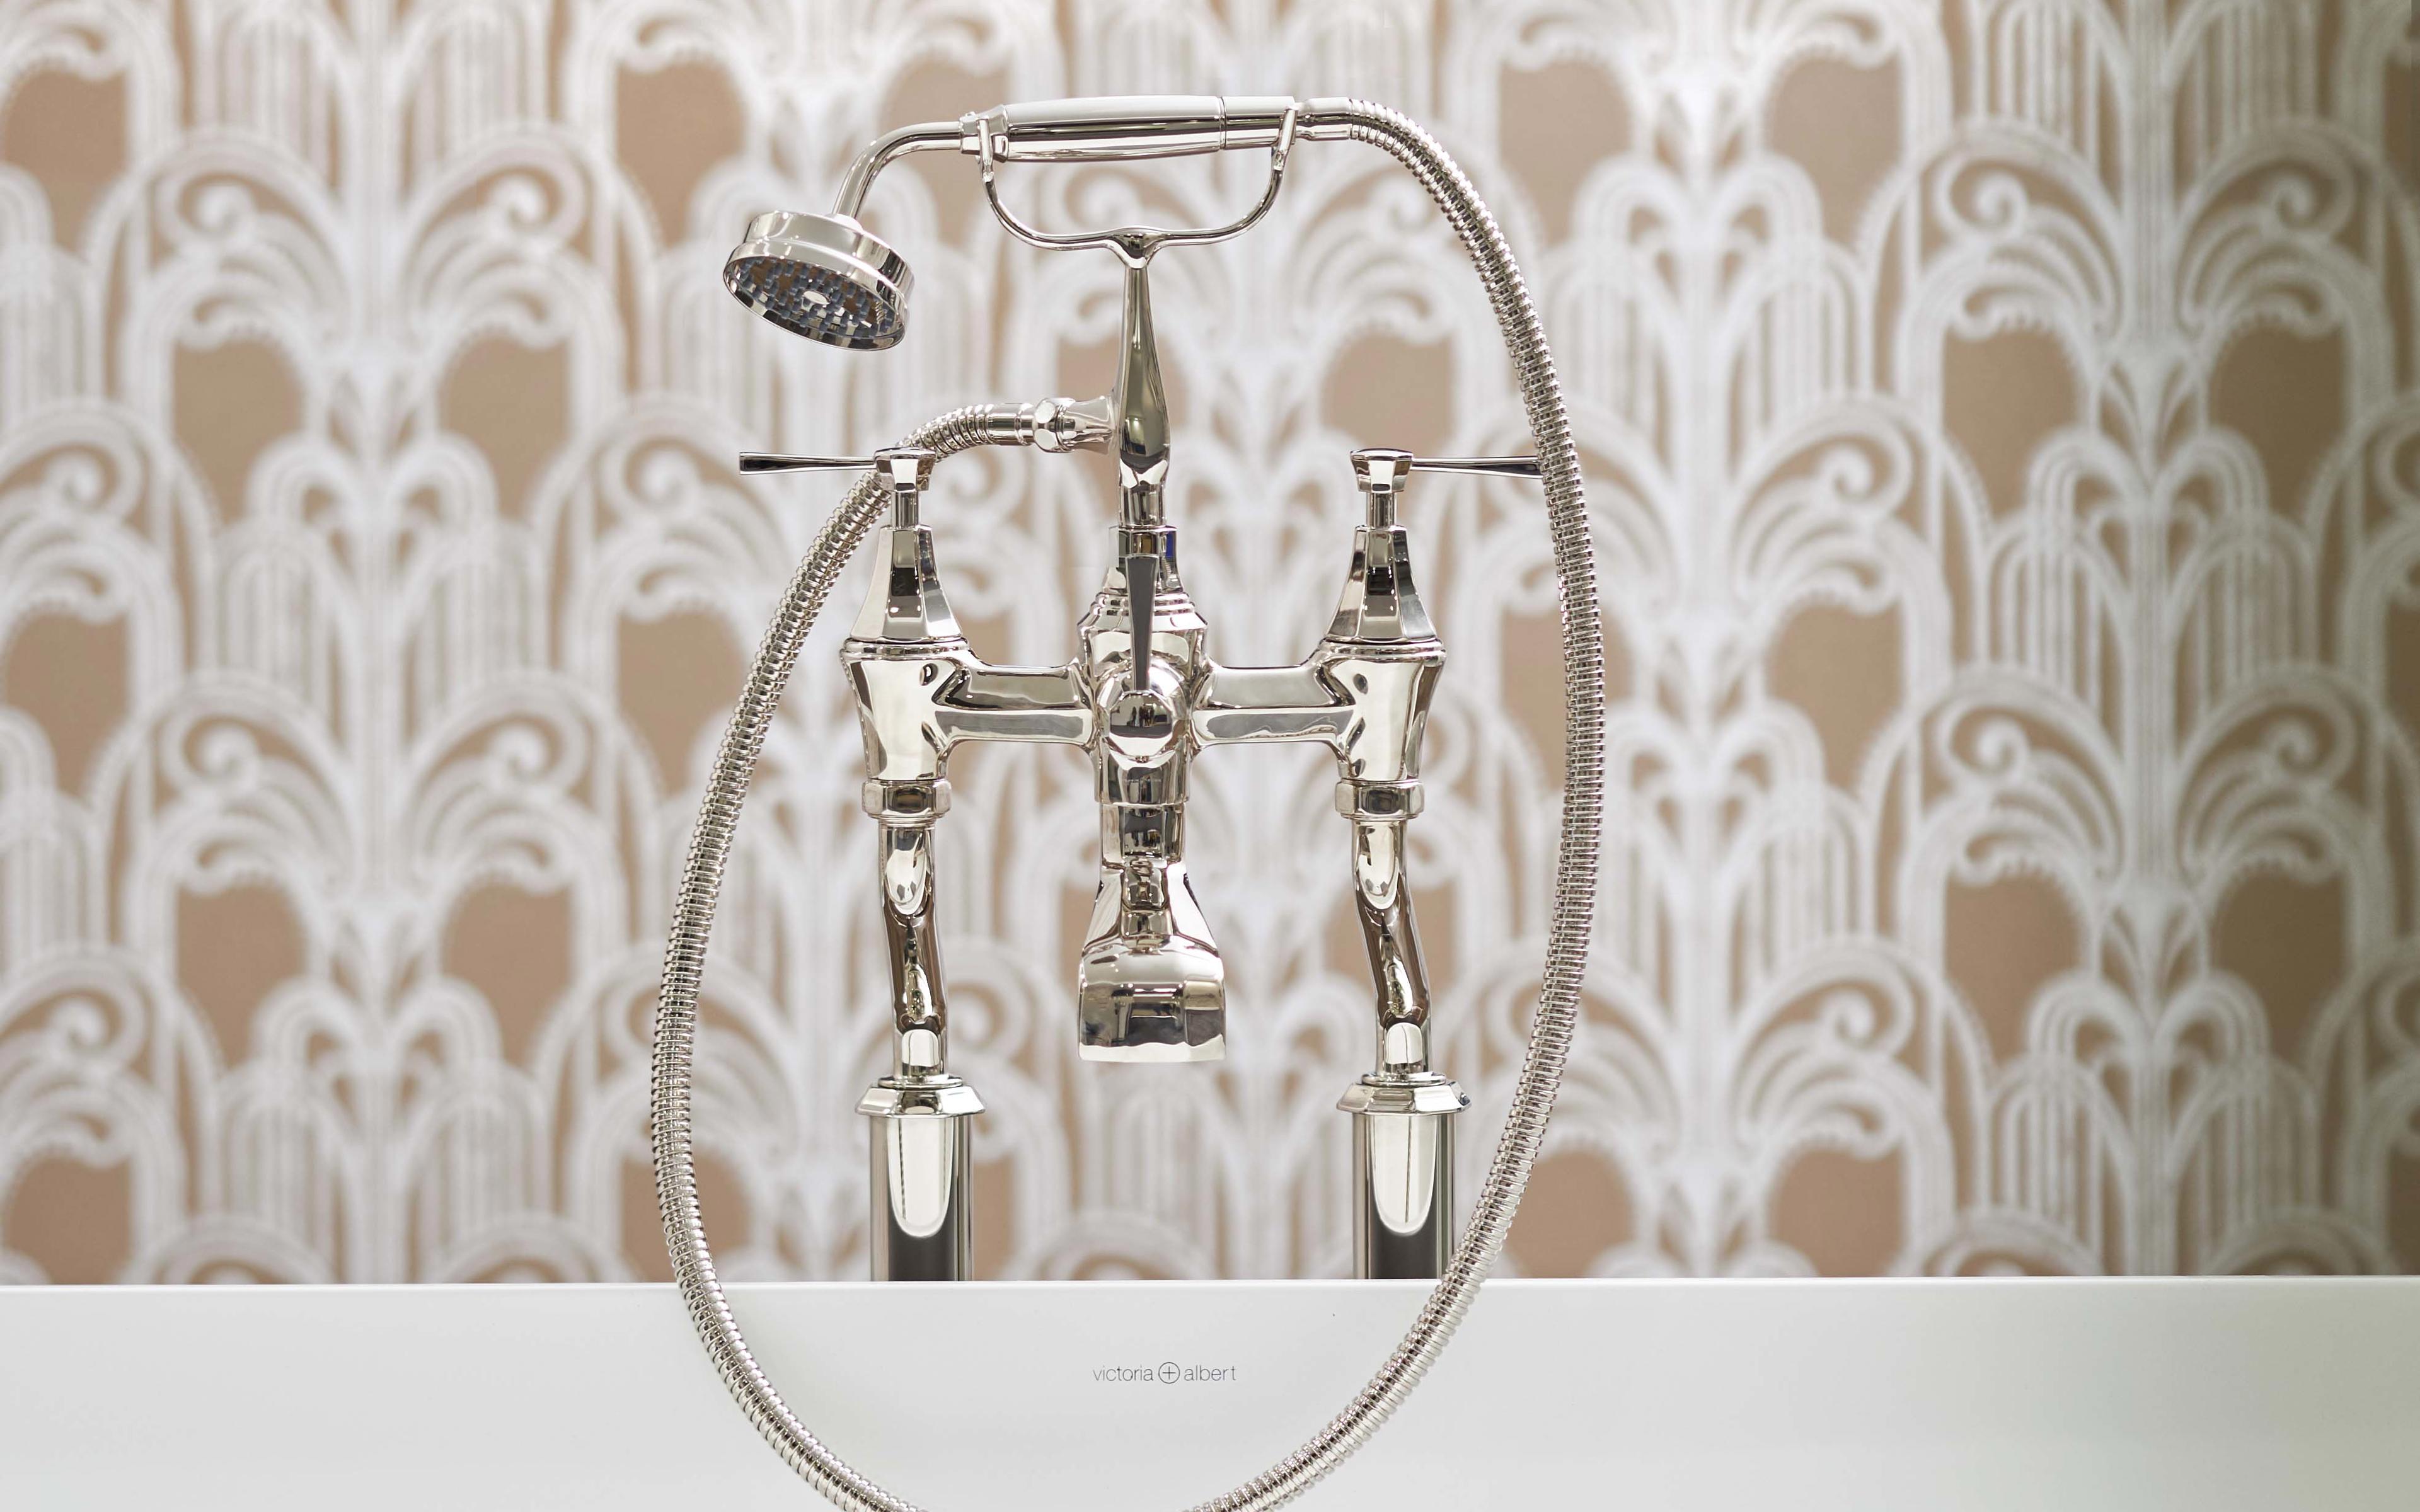 Deco Floor-Mounted Bath-Shower Mixer with Handshower - Nickel